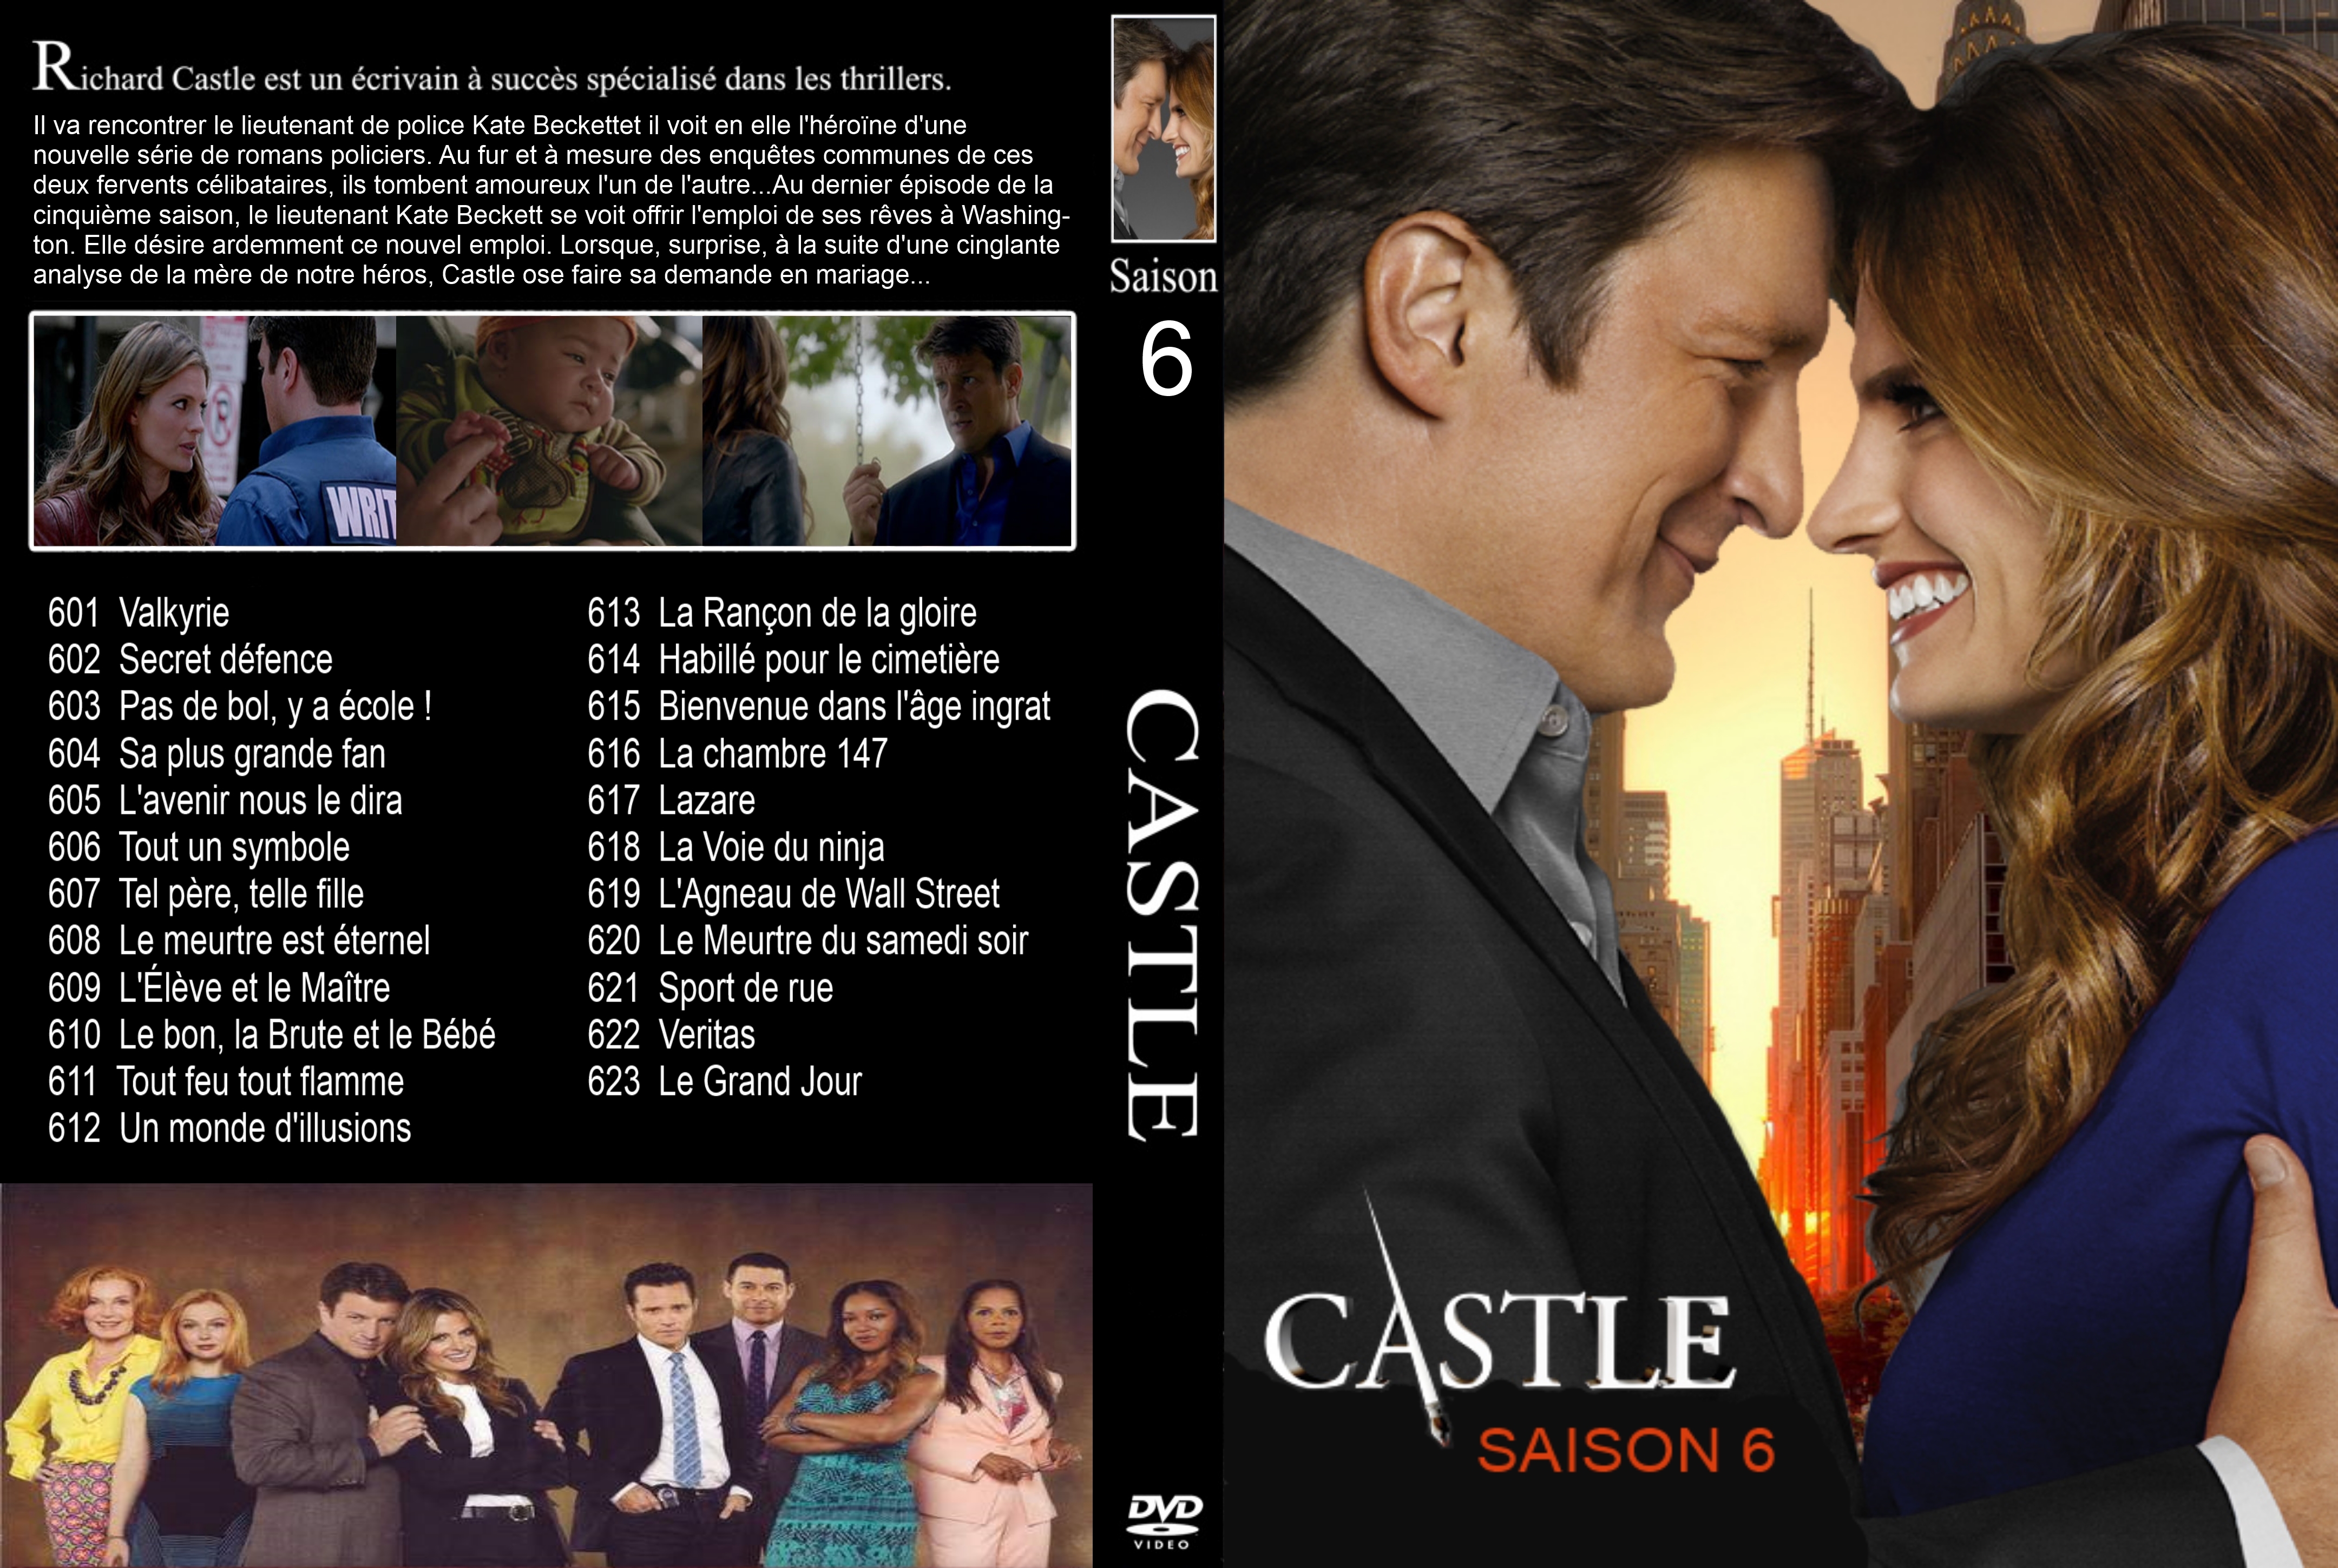 Jaquette DVD Castle saison 6 custom